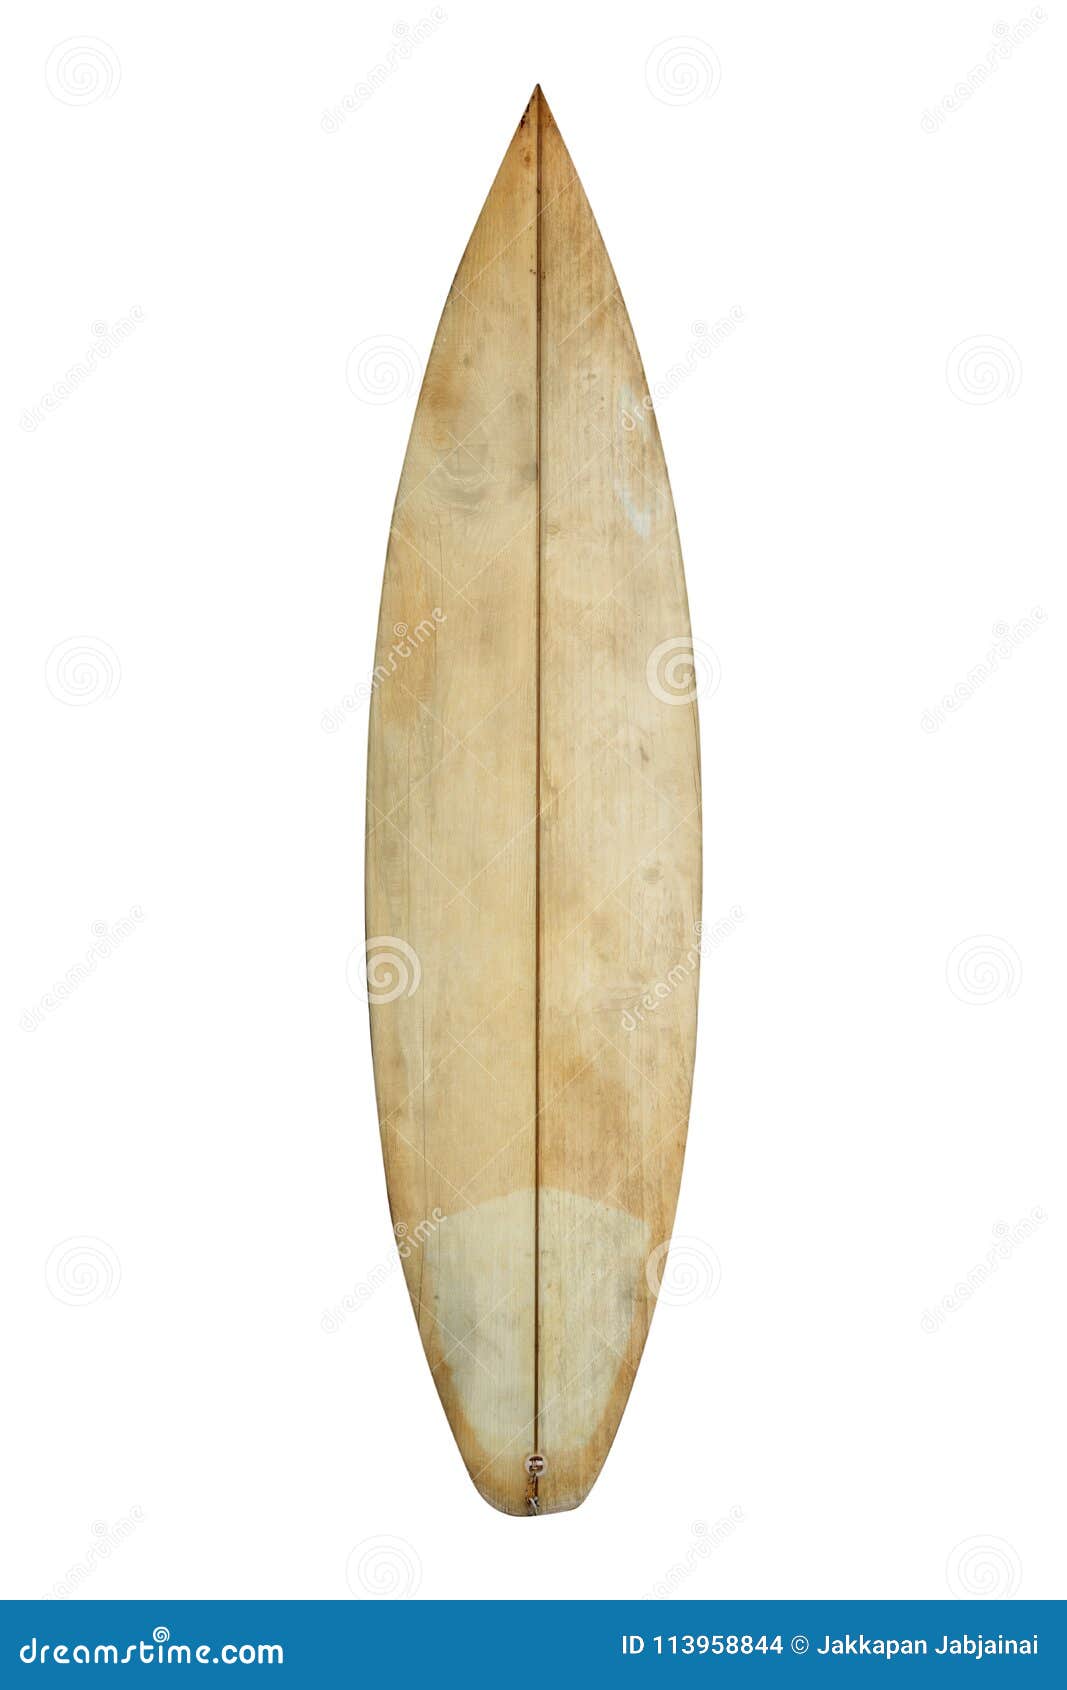 vintage wood surfboard  on white